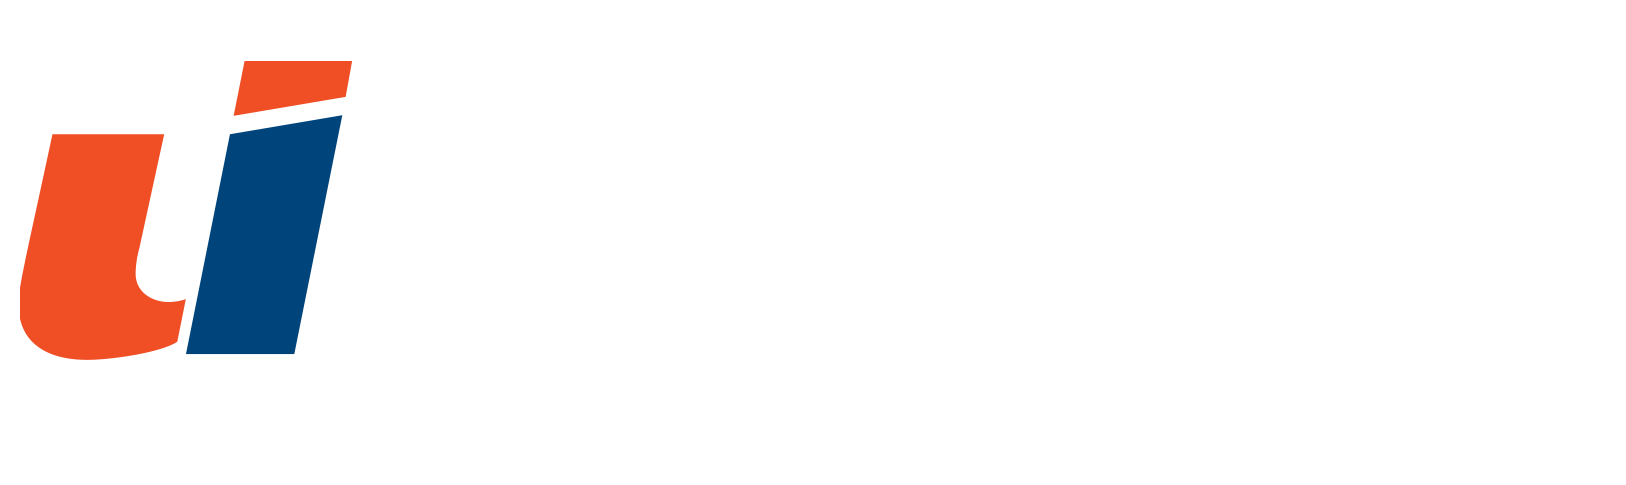 Uniqco Fleet Analytics